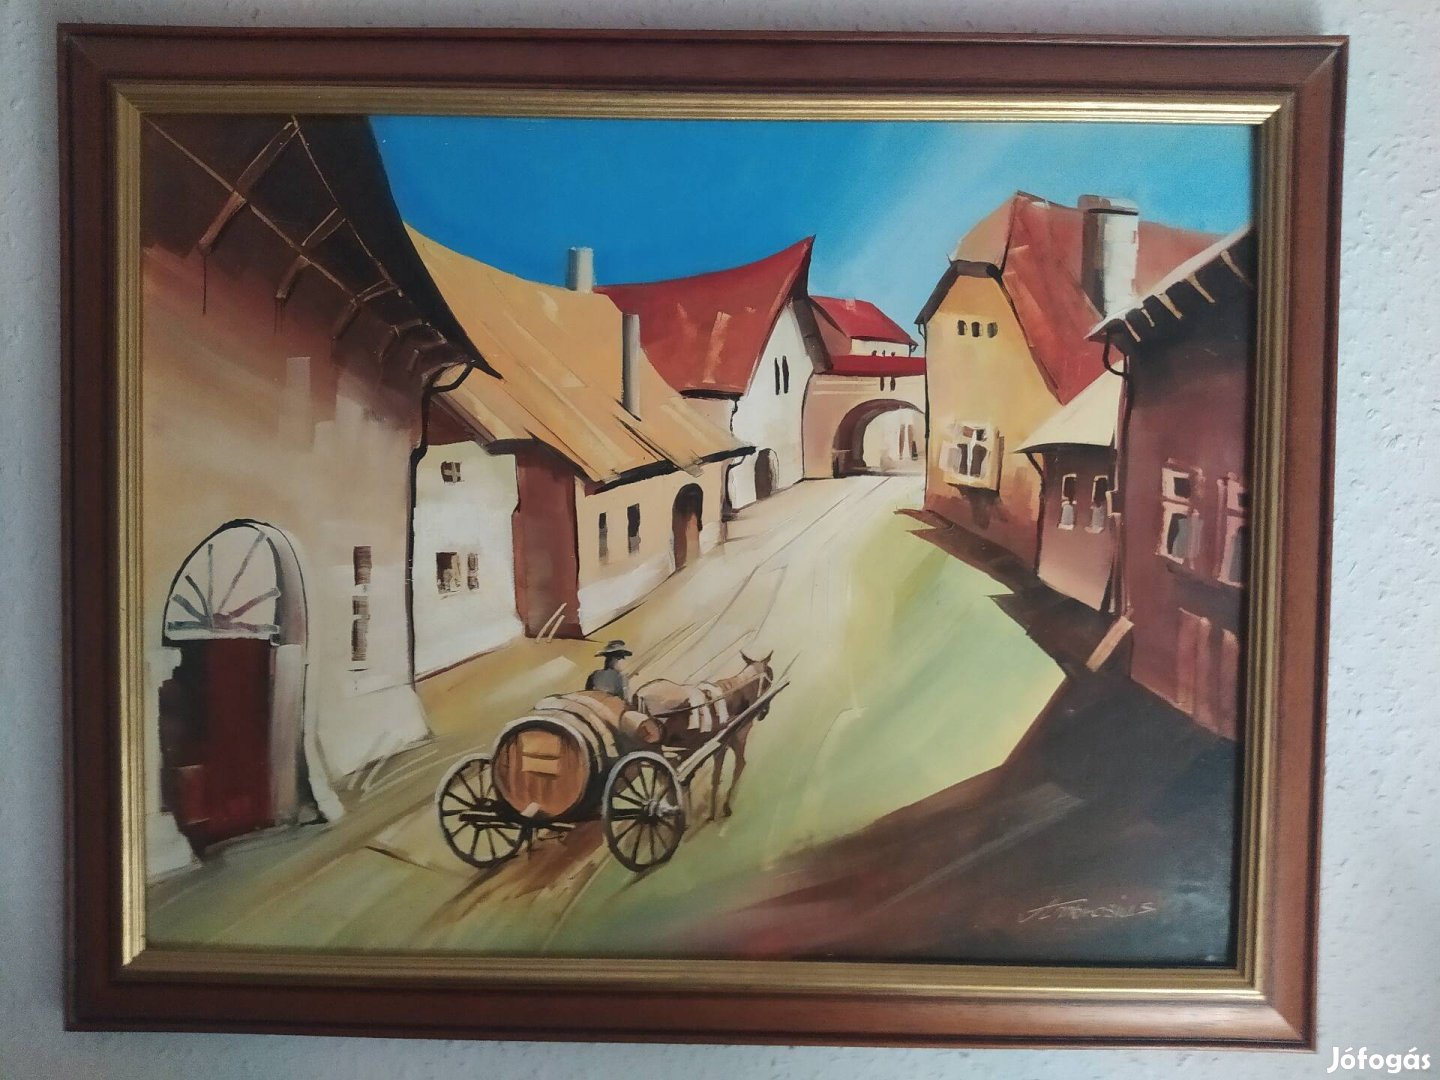 Nyögéri Zoltán Hazafelé c.festménye Fassel Ferenc stílusában